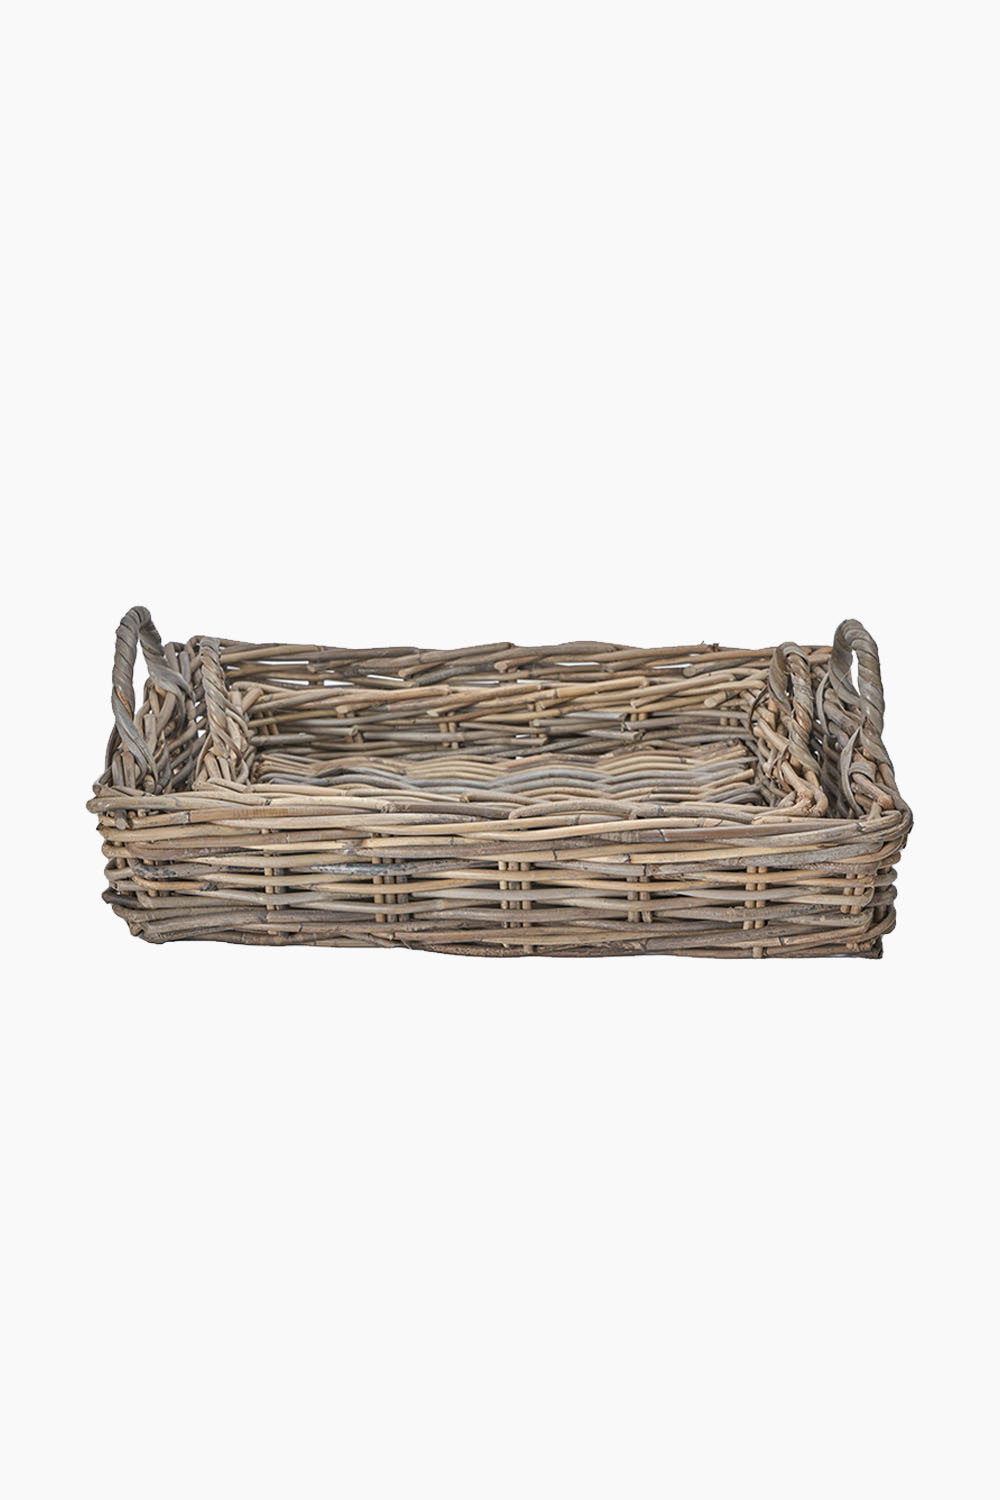 Grey Kubu Tray Baskets Set of 2